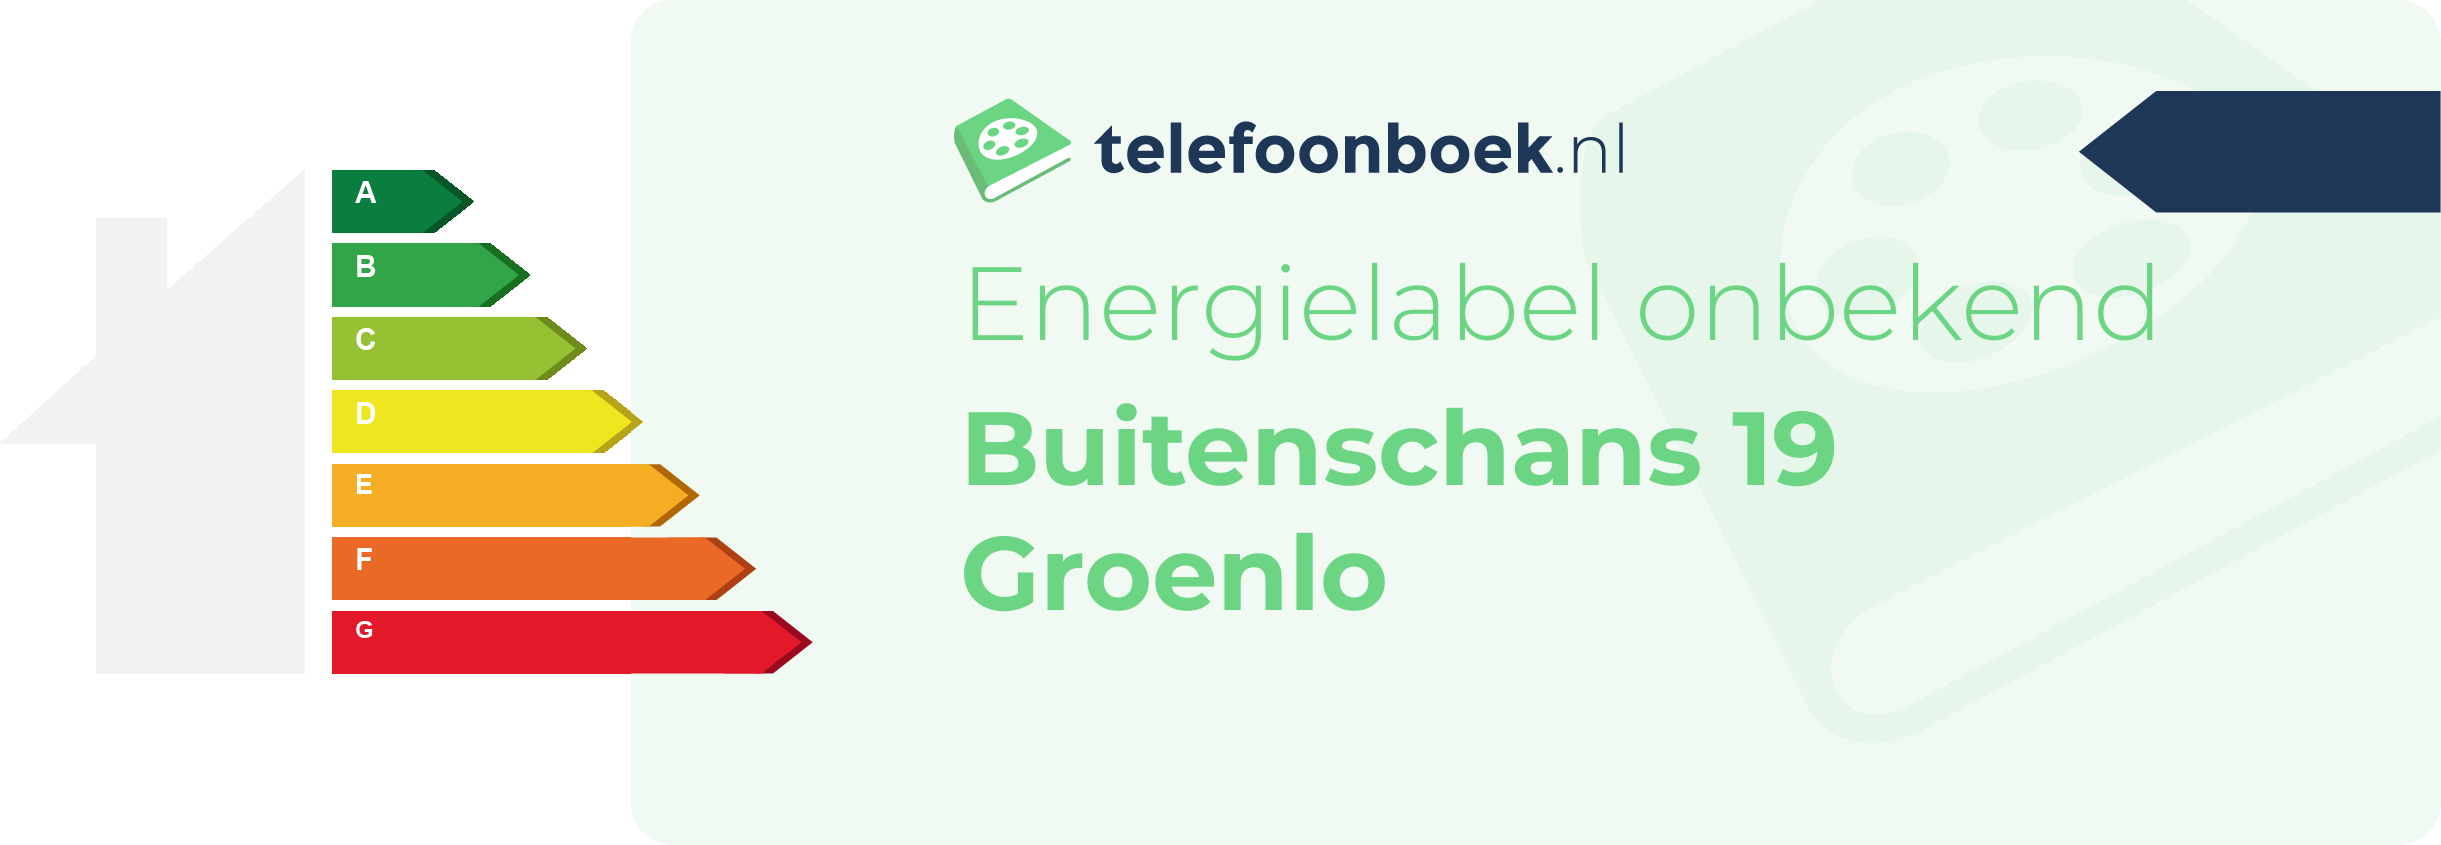 Energielabel Buitenschans 19 Groenlo